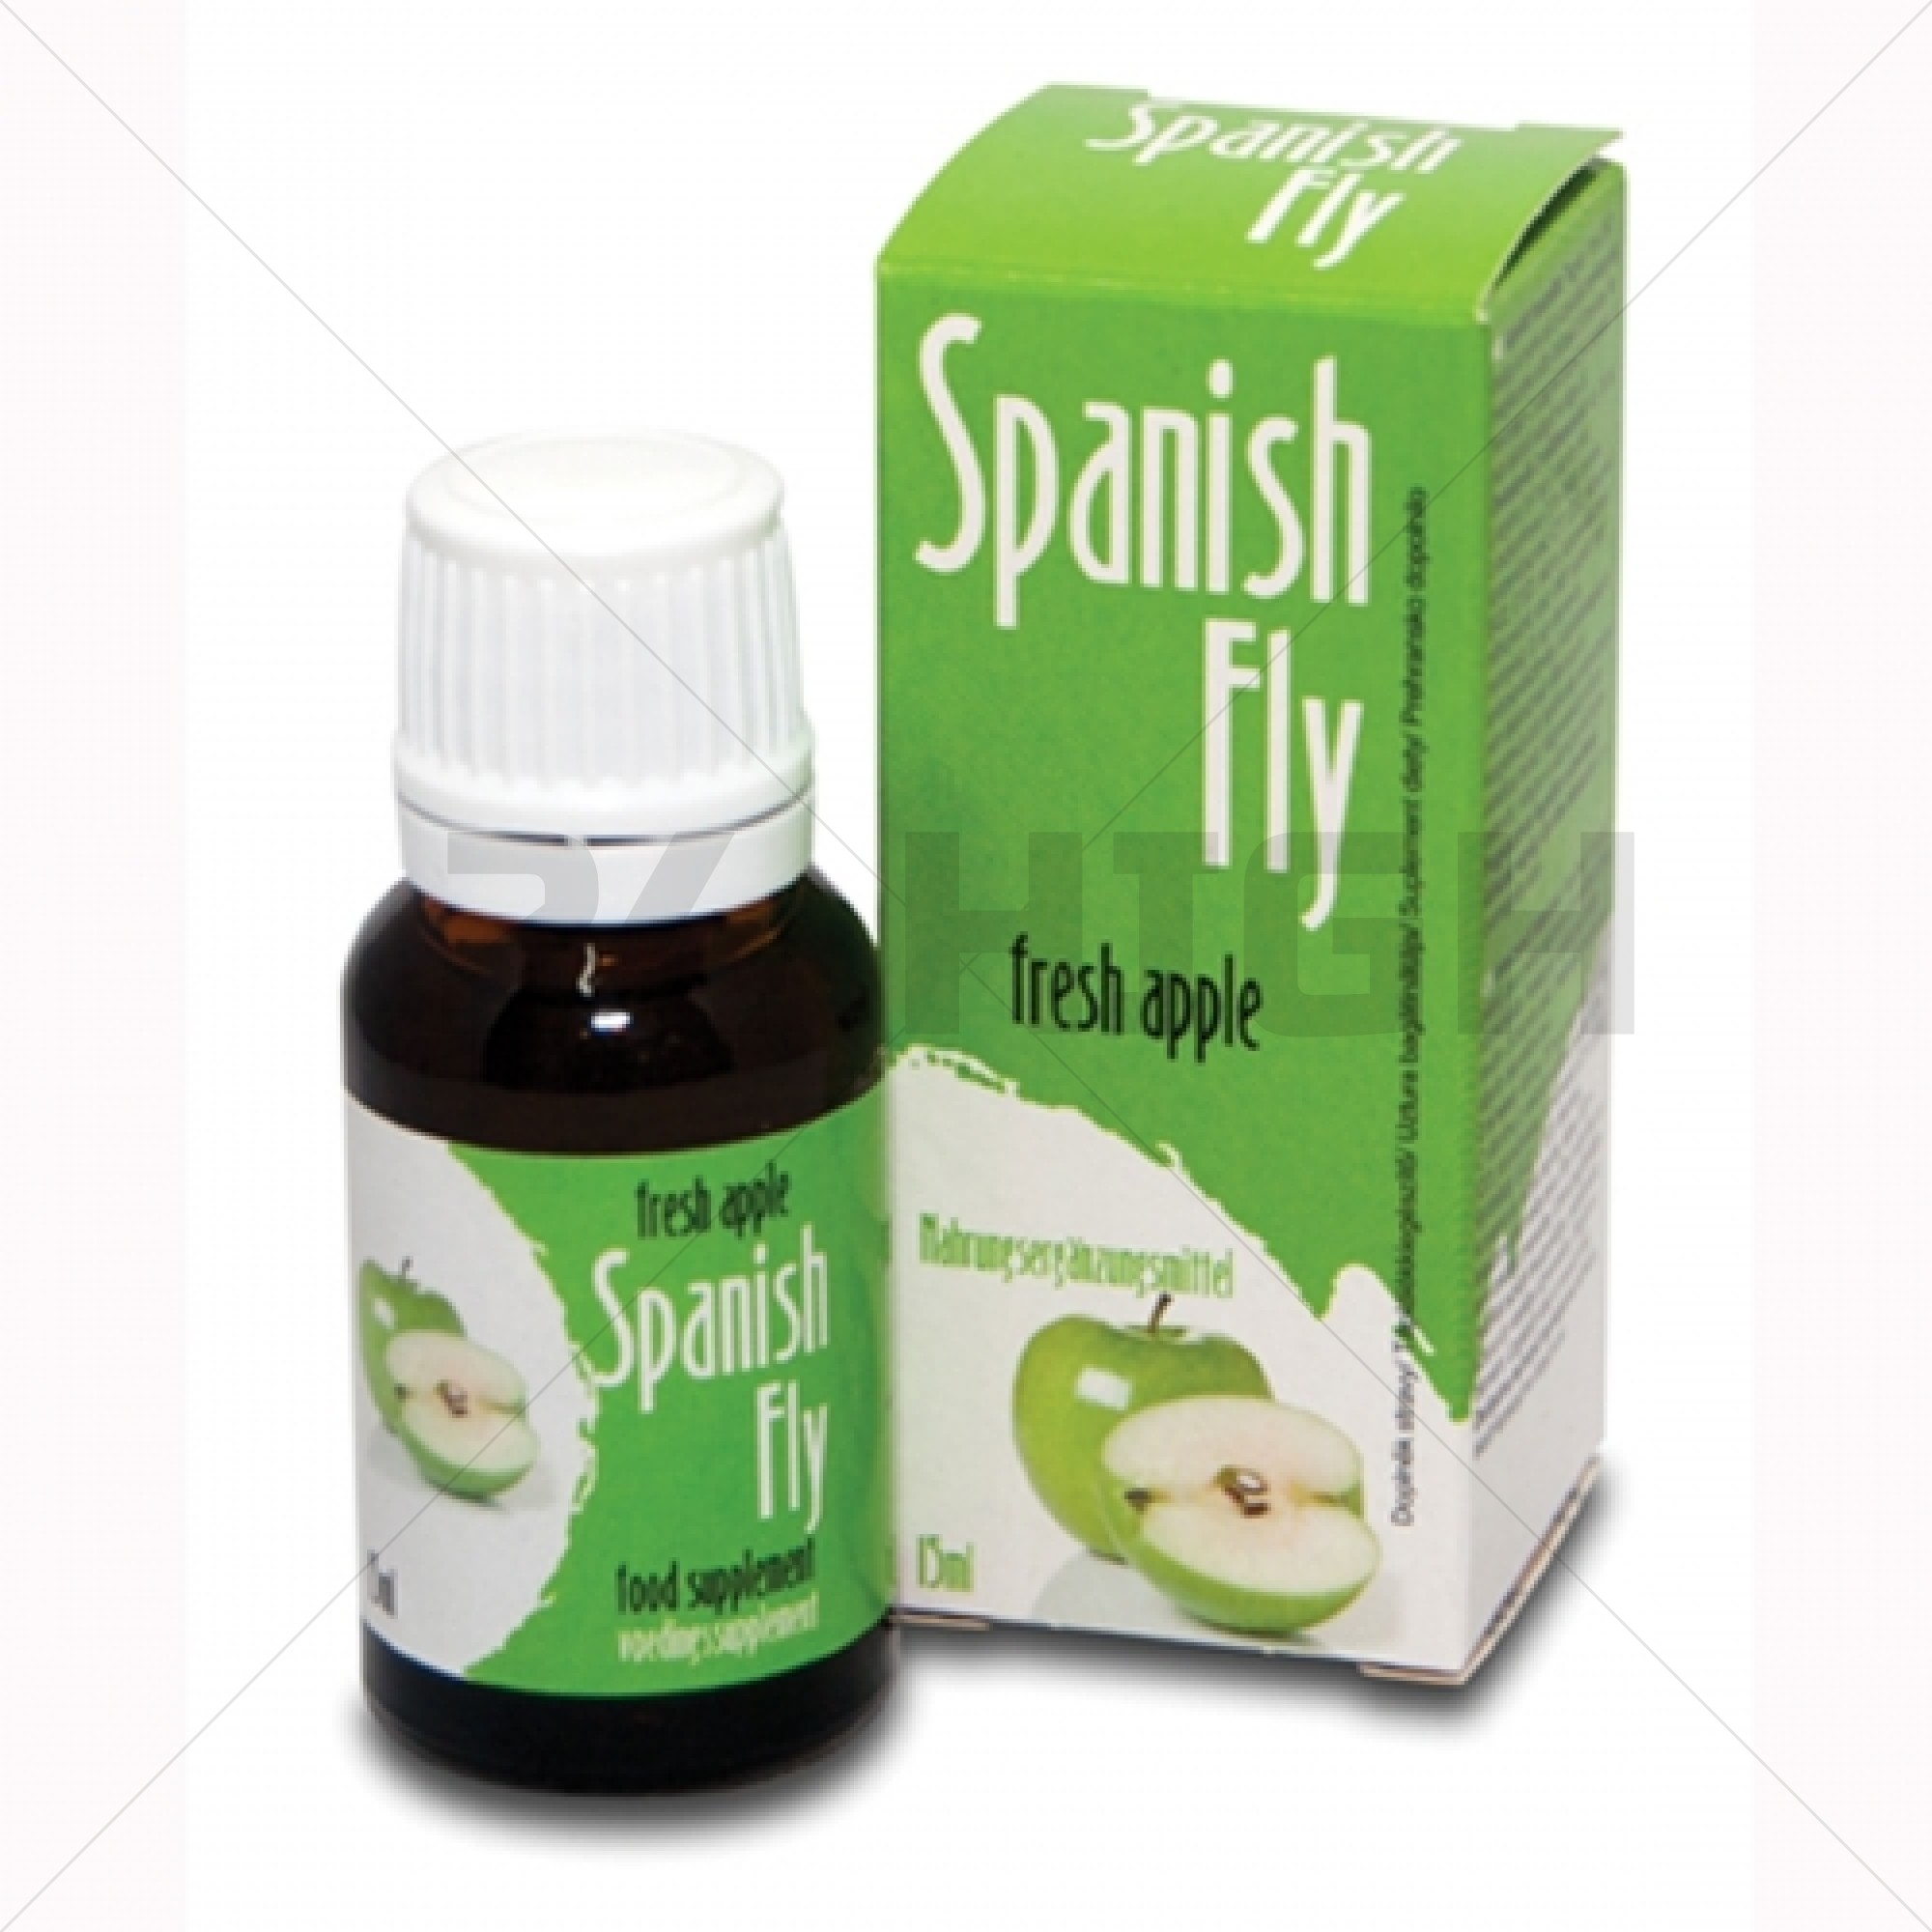 Spanish Fly Fresca Manzana - 15 ml